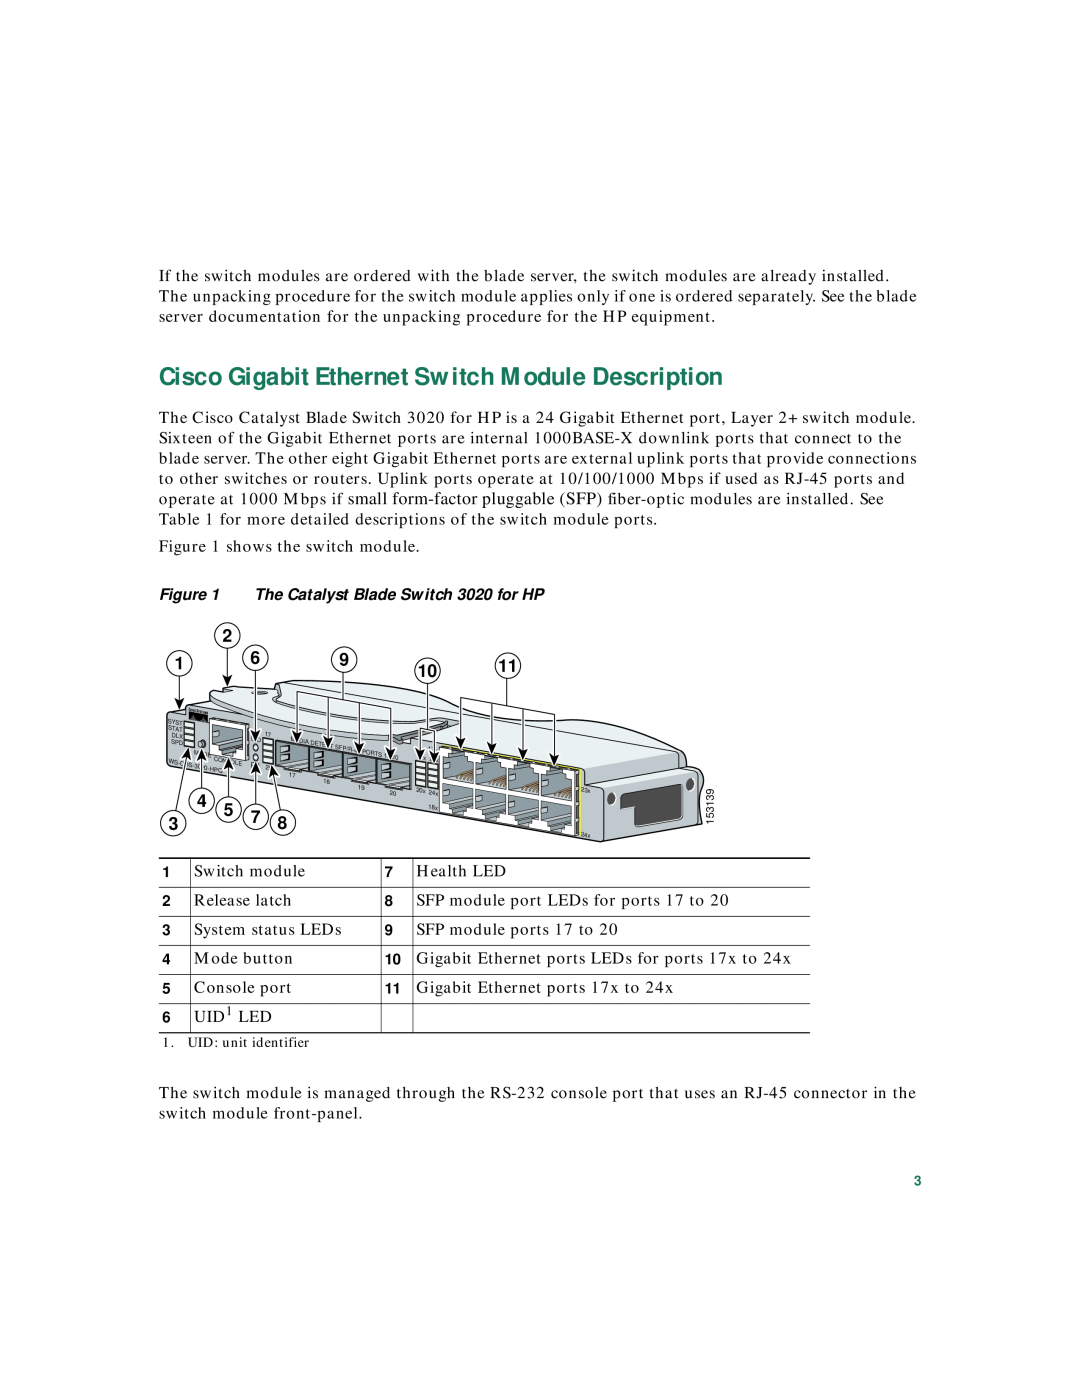 Cisco Systems 3020 warranty Cisco Gigabit Ethernet Switch Module Description 